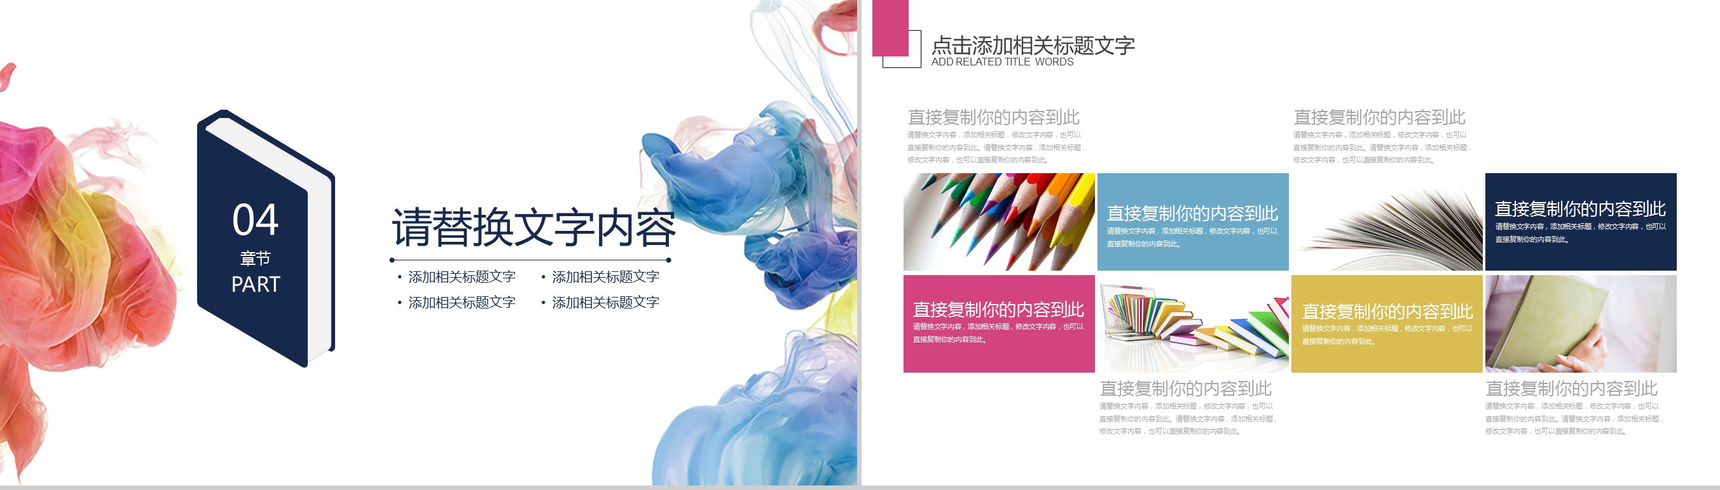 彩色中国元素社团招新PPT模板-11